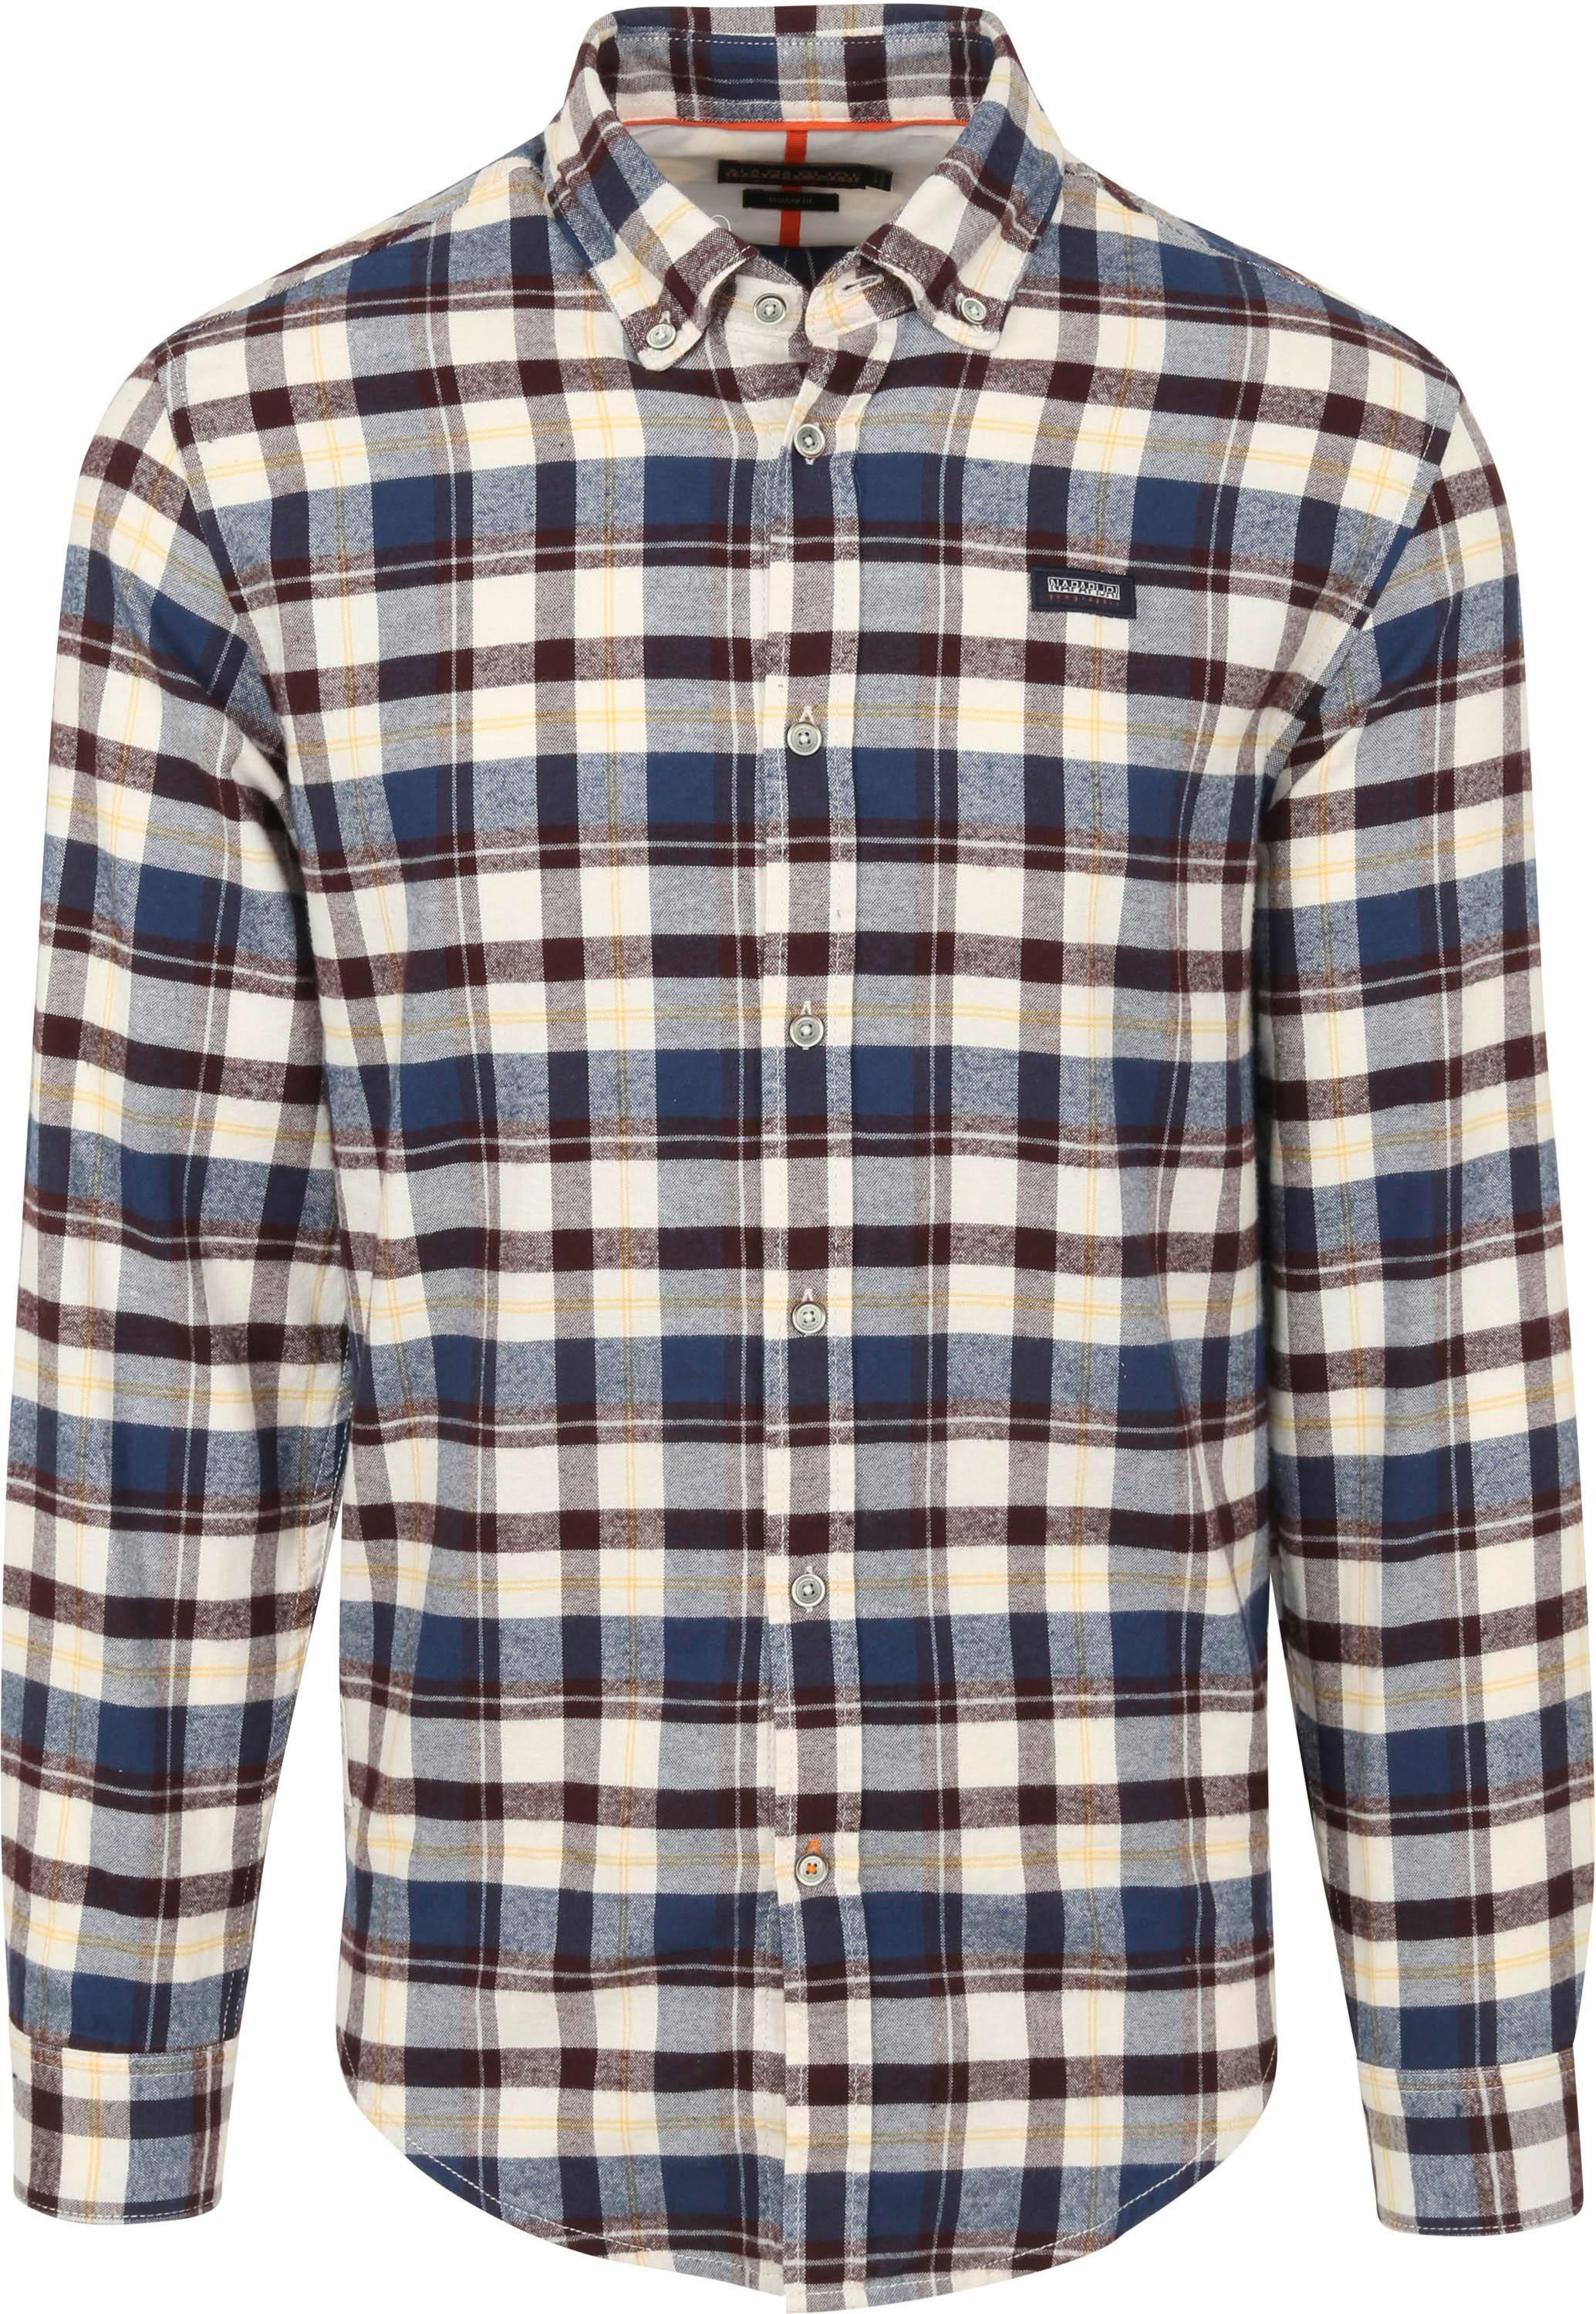 Napapijri Shirt Checkered Blue size L